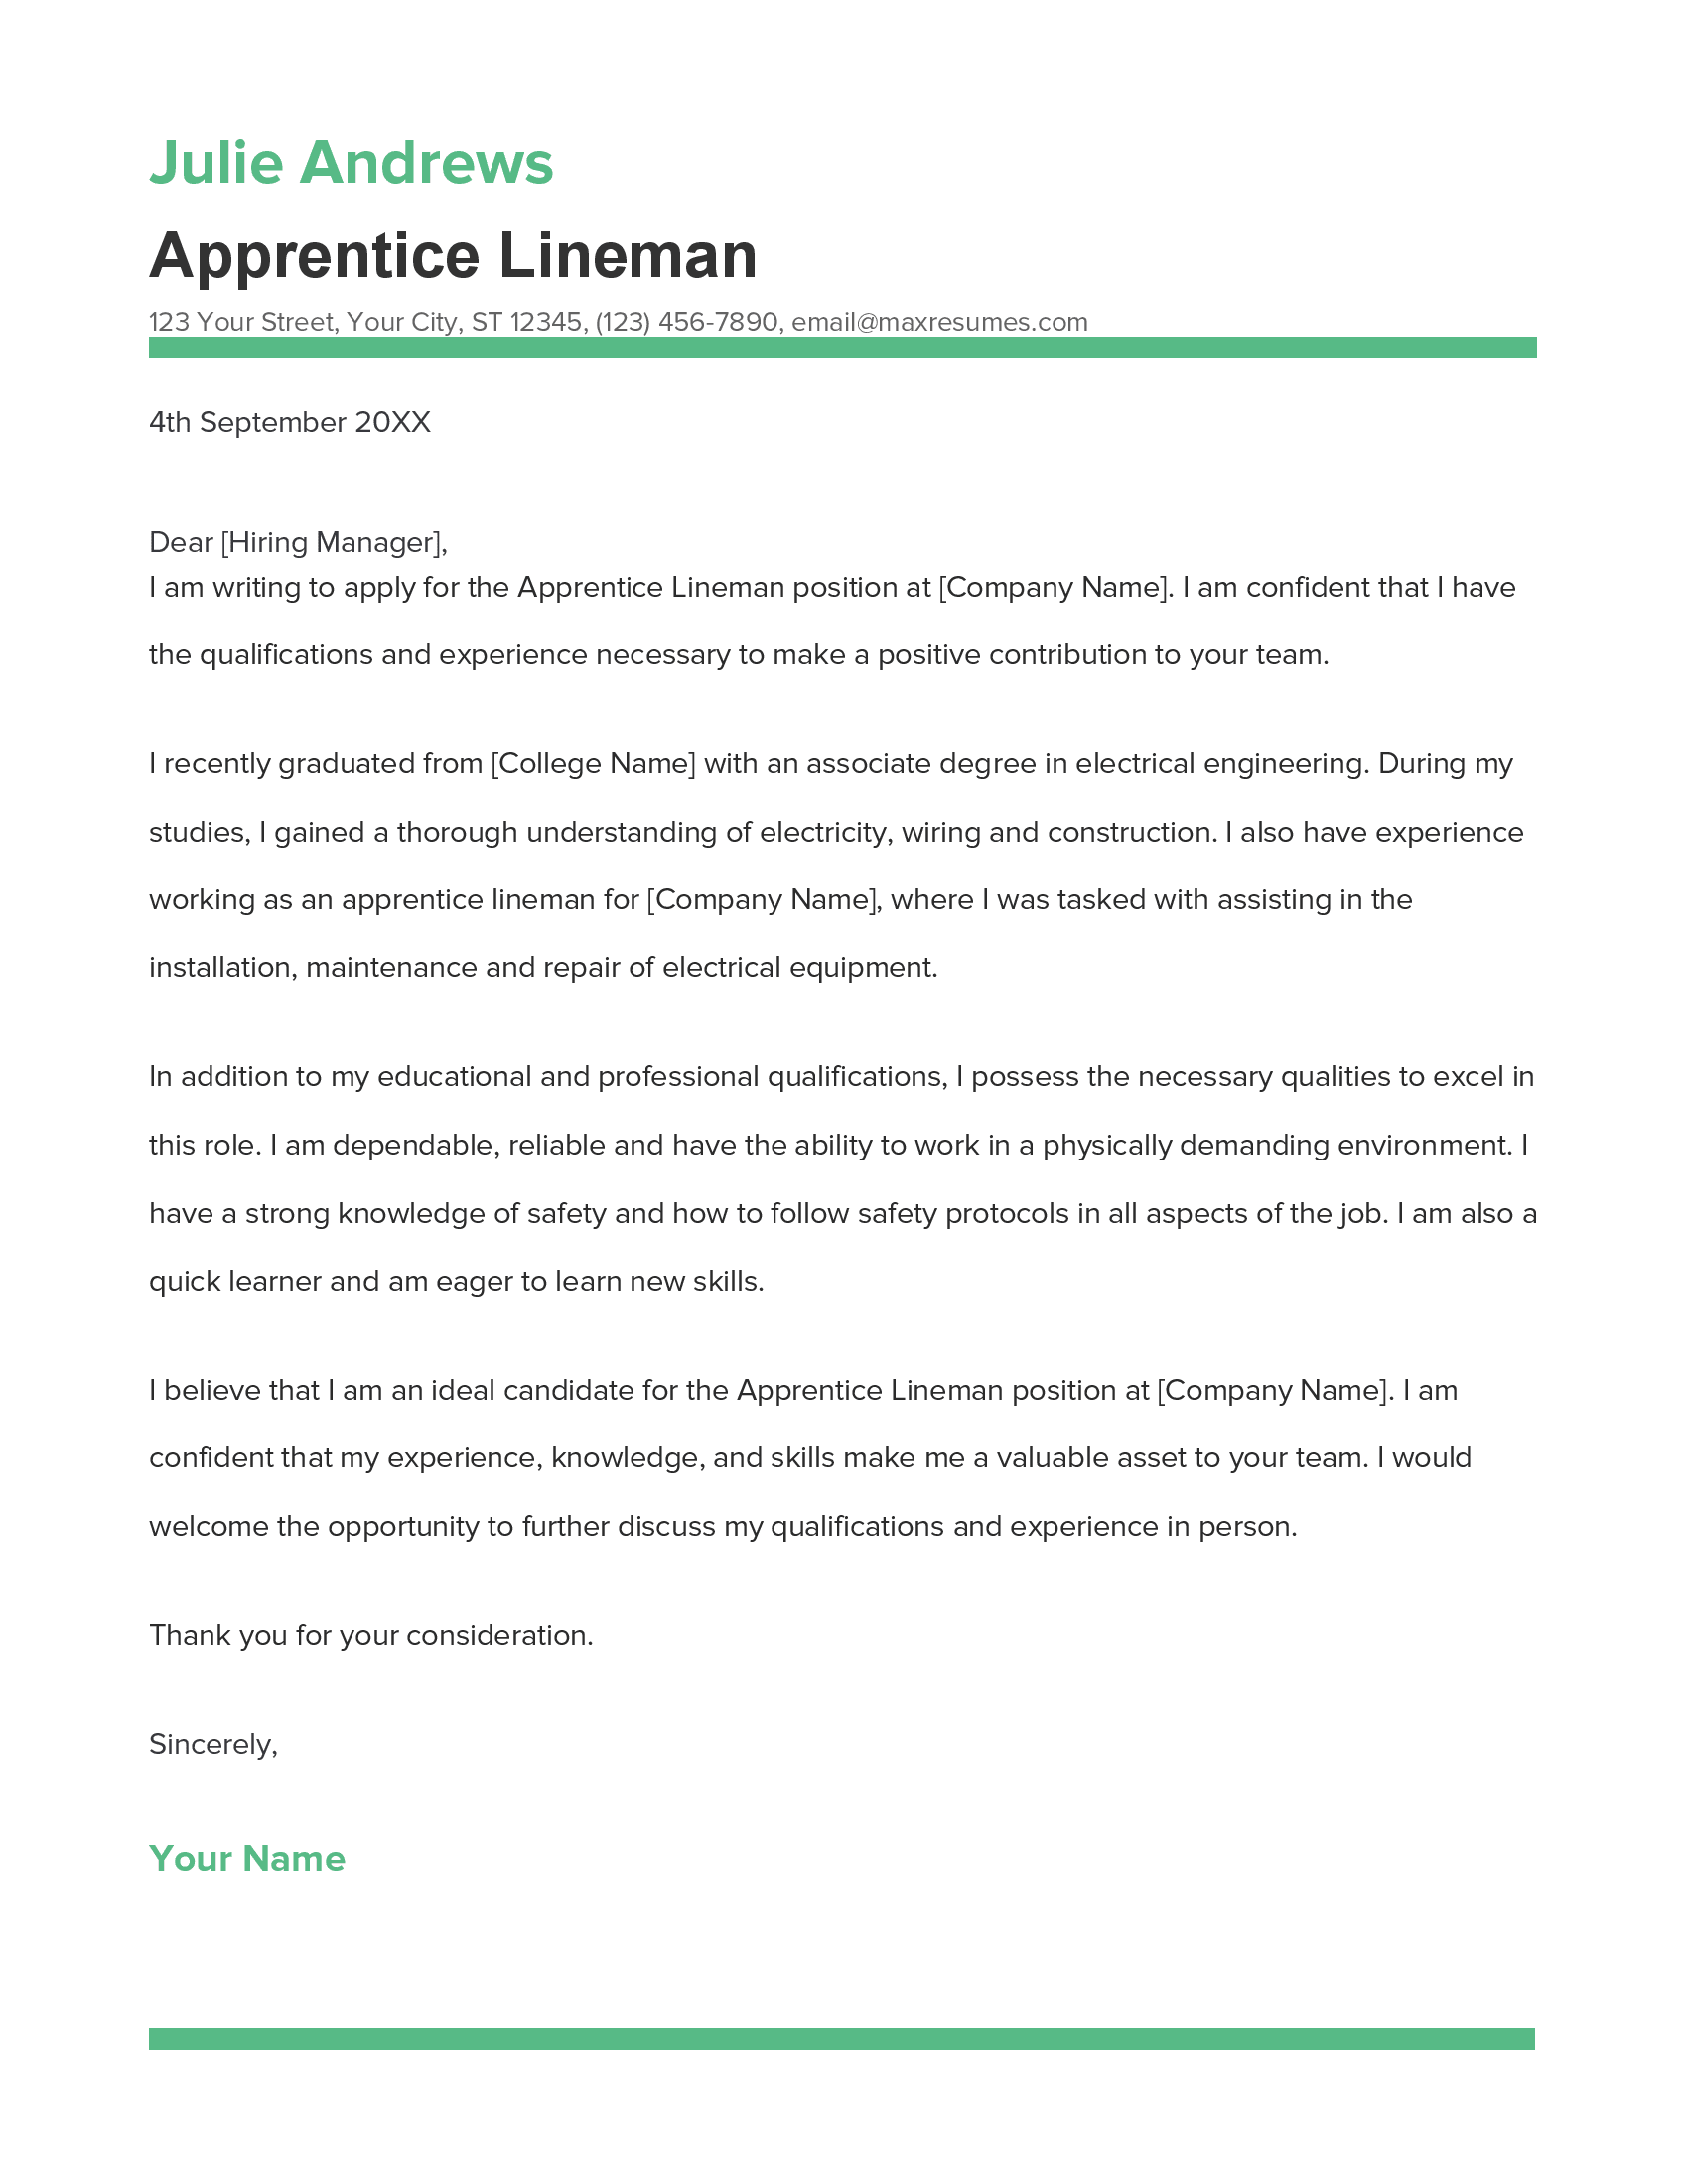 cover letter for apprenticeship lineman